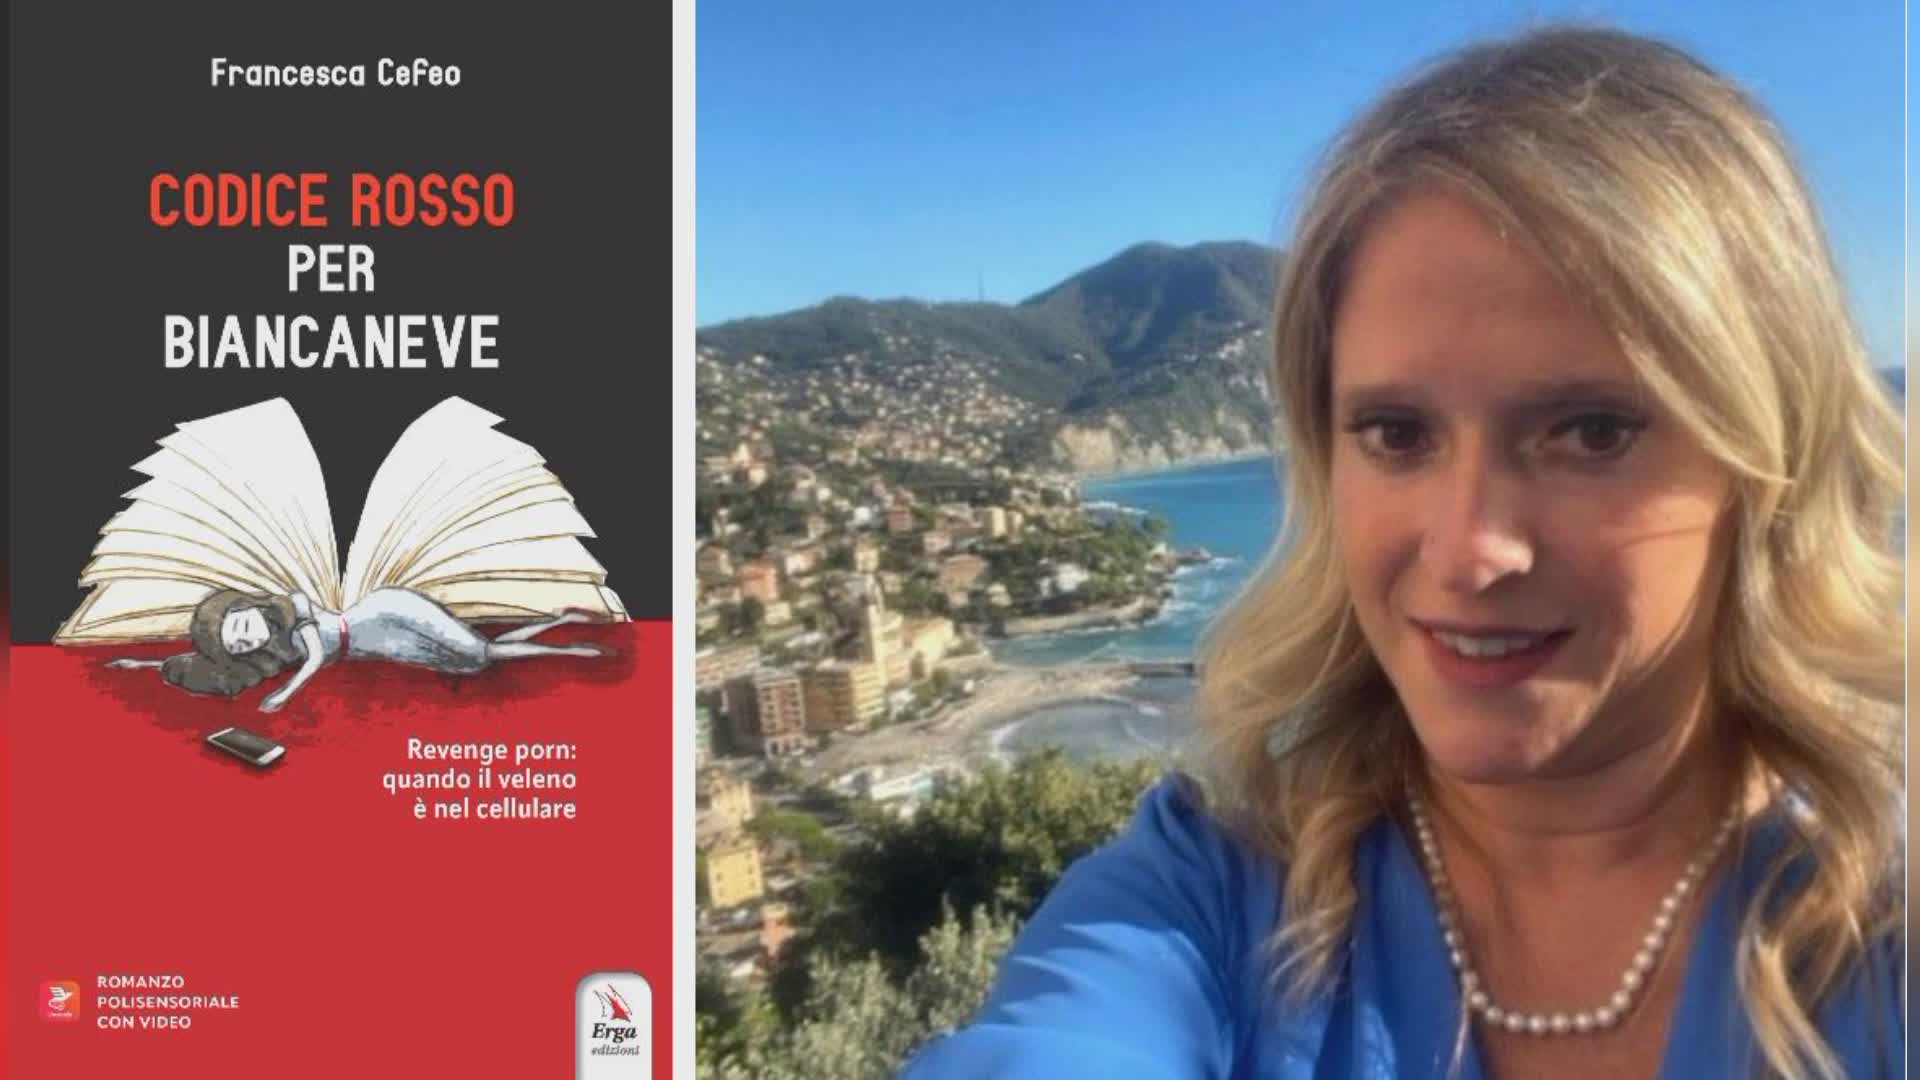 Genova, libri: Codice rosso per Biancaneve, romanzo di Francesca Cefeo  sul revenge porn 